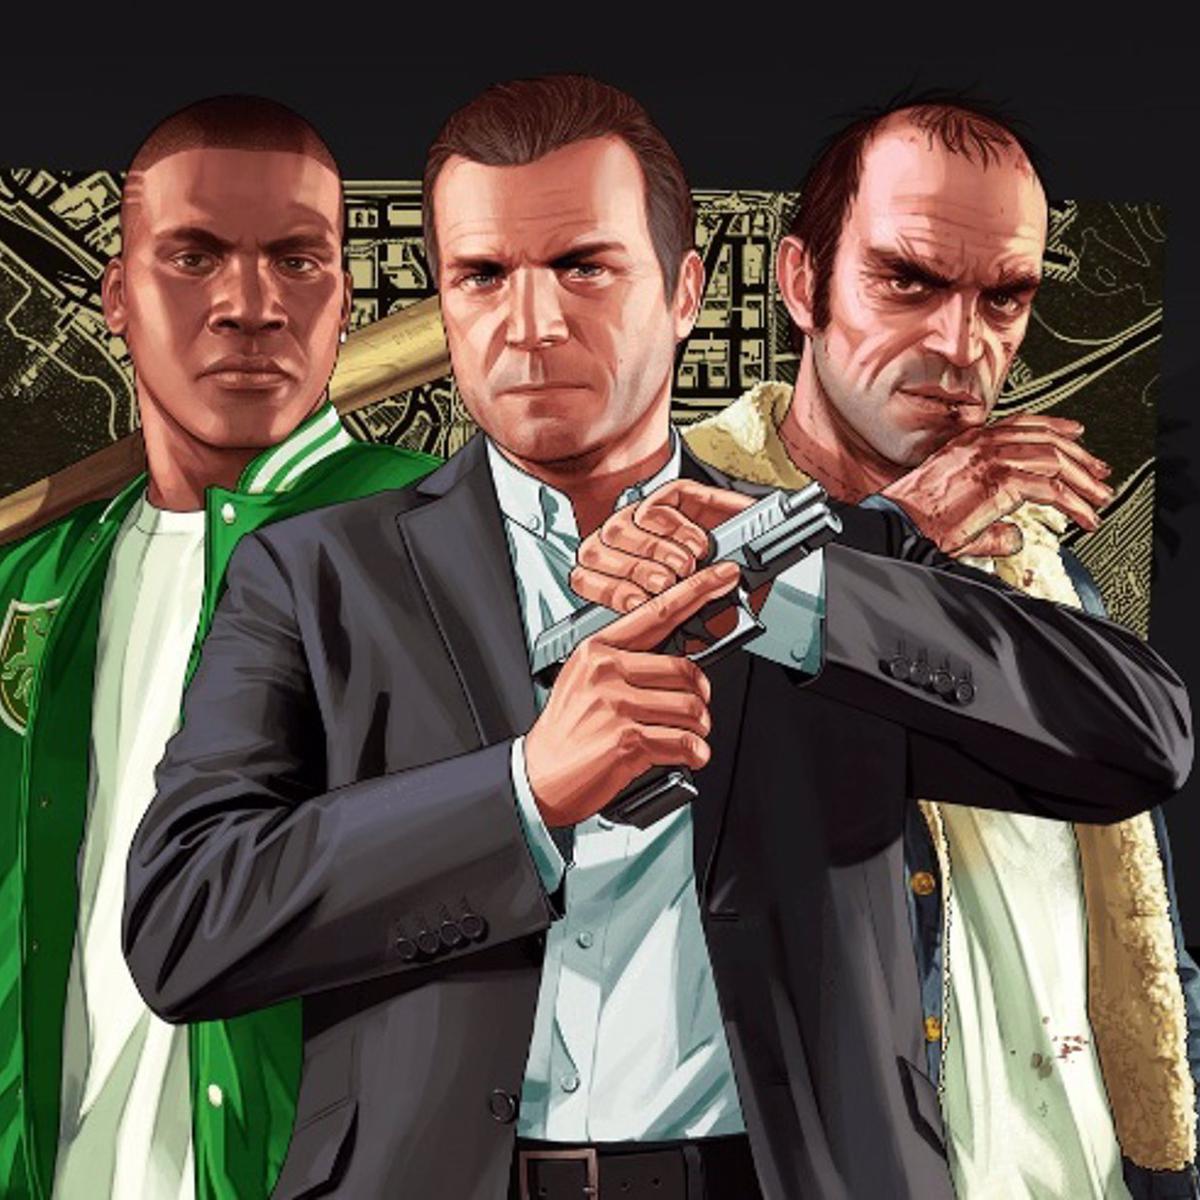 Rockstar confirma produção de GTA 6 - Tecnologia e Games - Folha PE